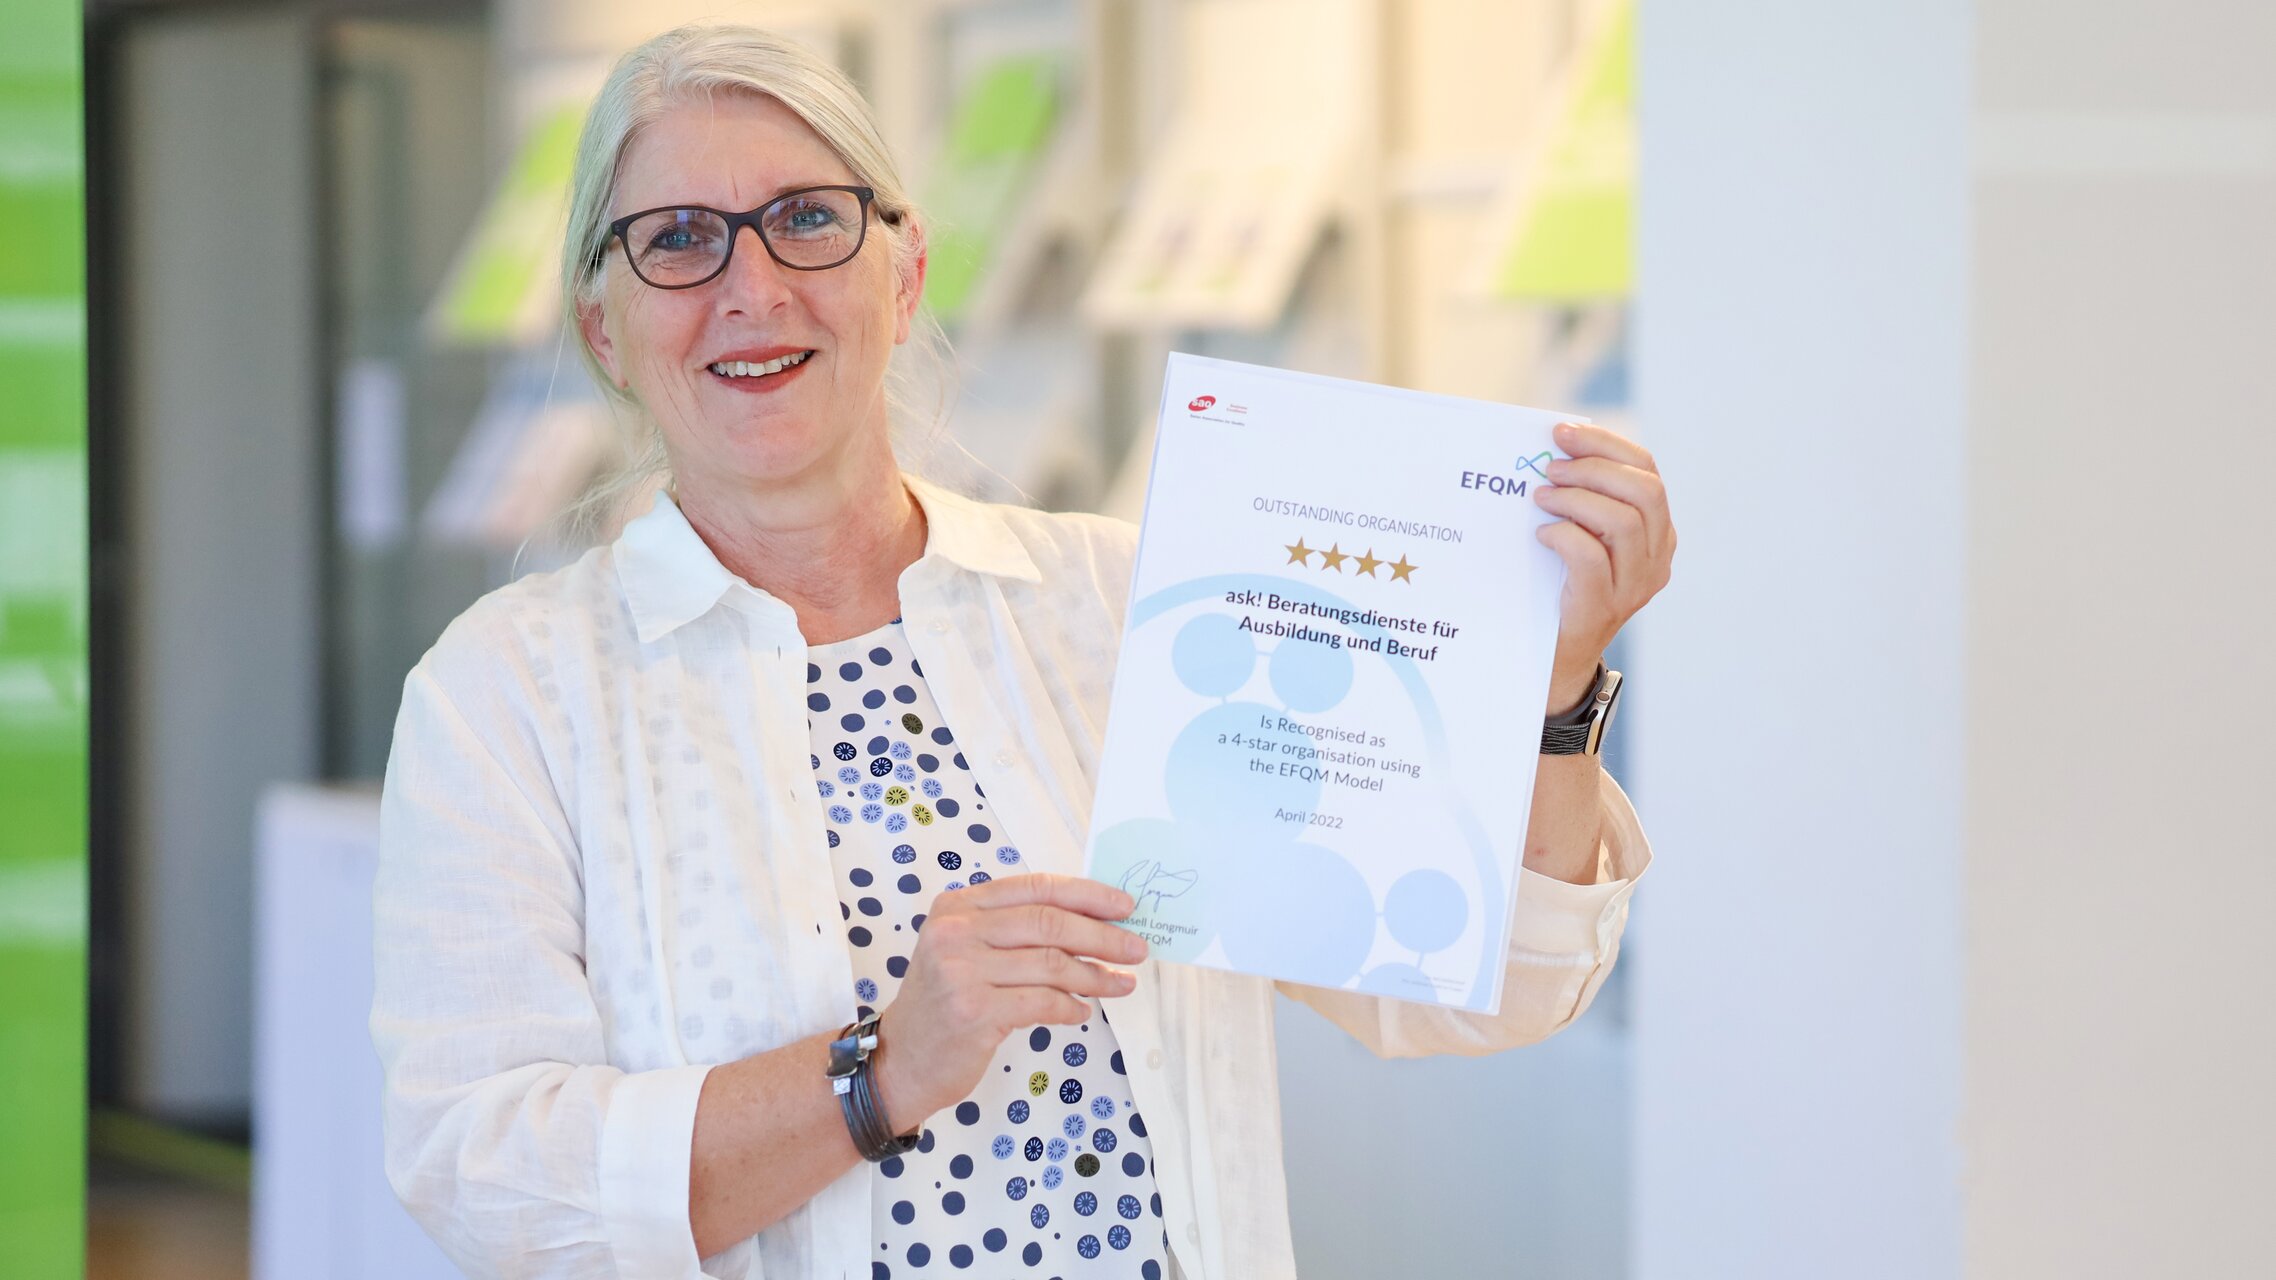 Sonja Brönnimann hält das EFQM-Zertifikat in der Hand. | © ask! - Beratungsdienste für Ausbildung und Beruf